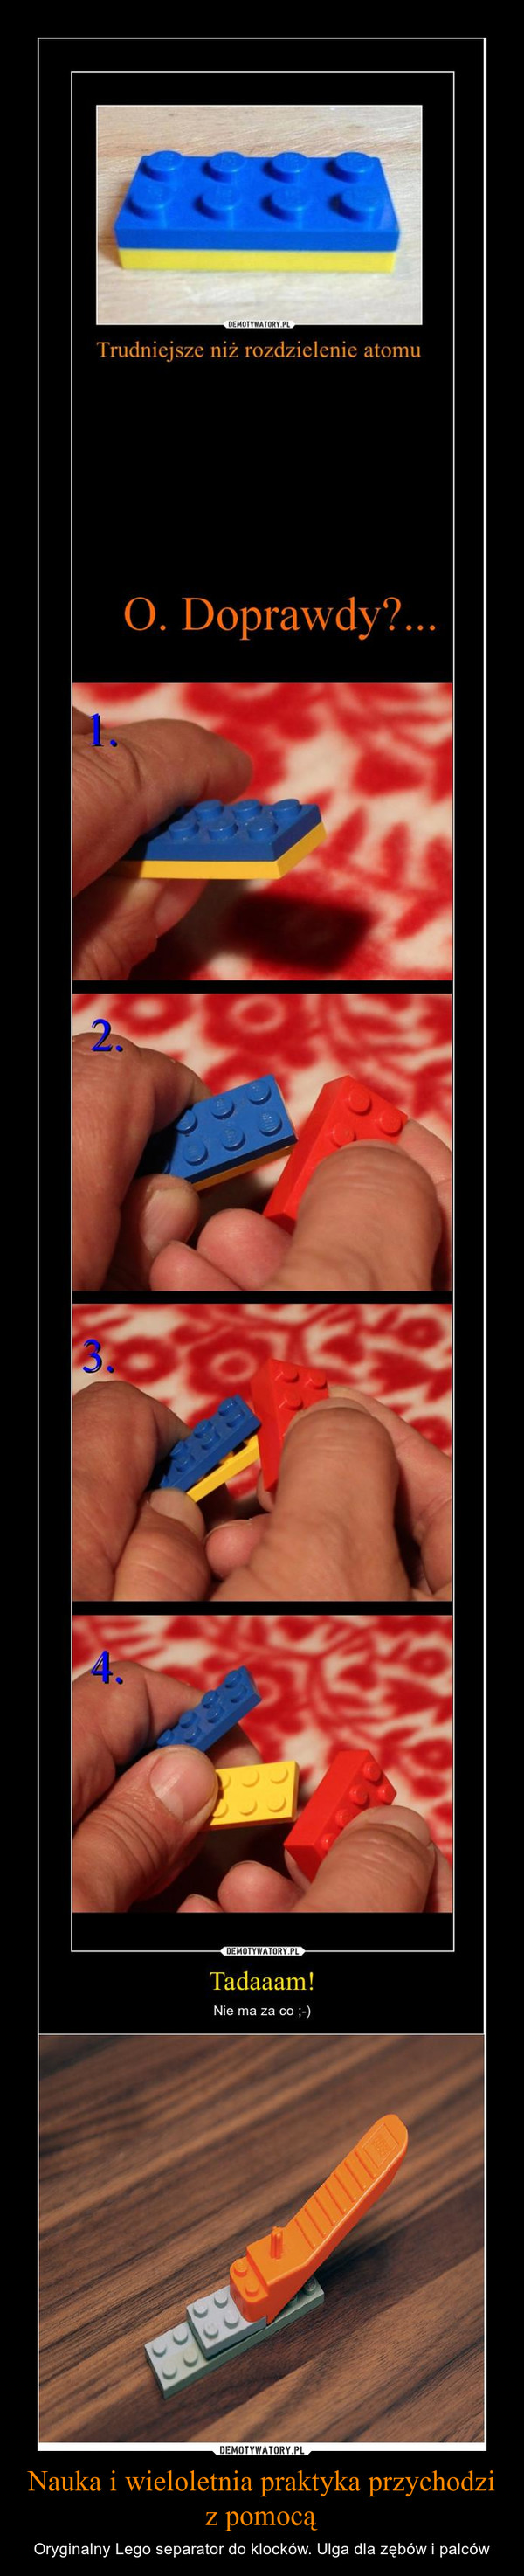 Nauka i wieloletnia praktyka przychodzi z pomocą – Oryginalny Lego separator do klocków. Ulga dla zębów i palców 